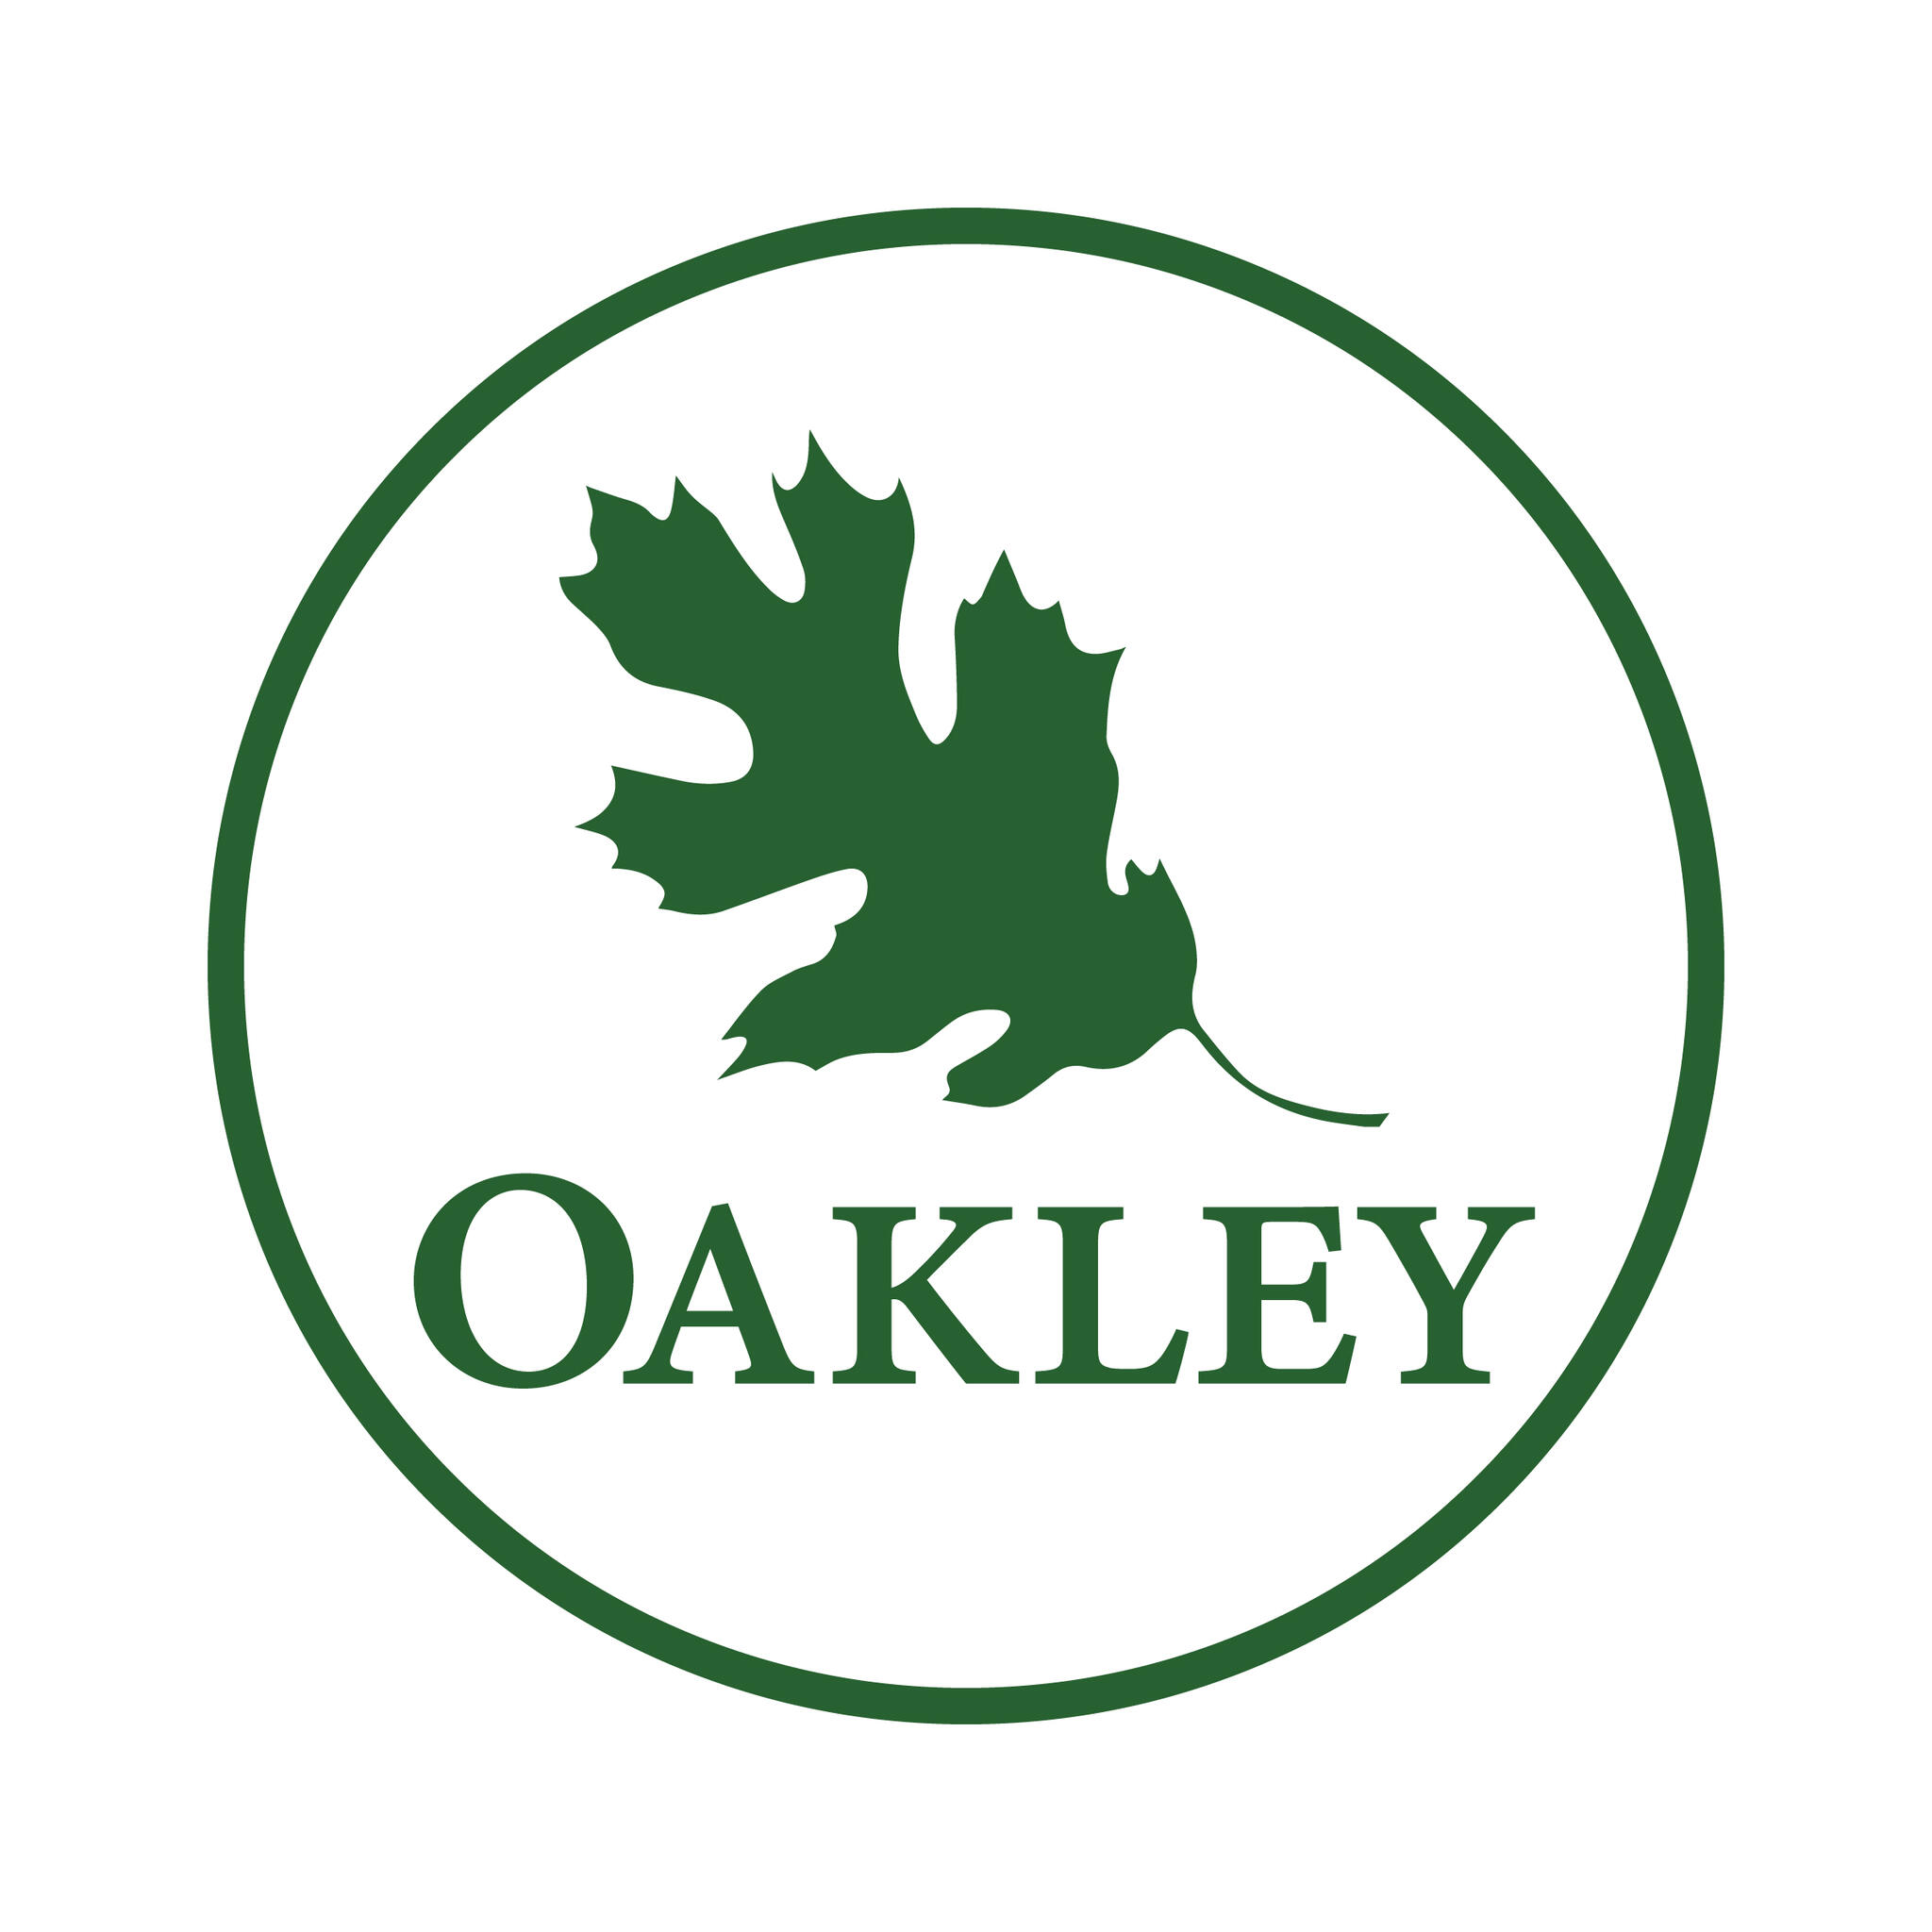 City of Oakley - 1218 updates — Nextdoor — Nextdoor